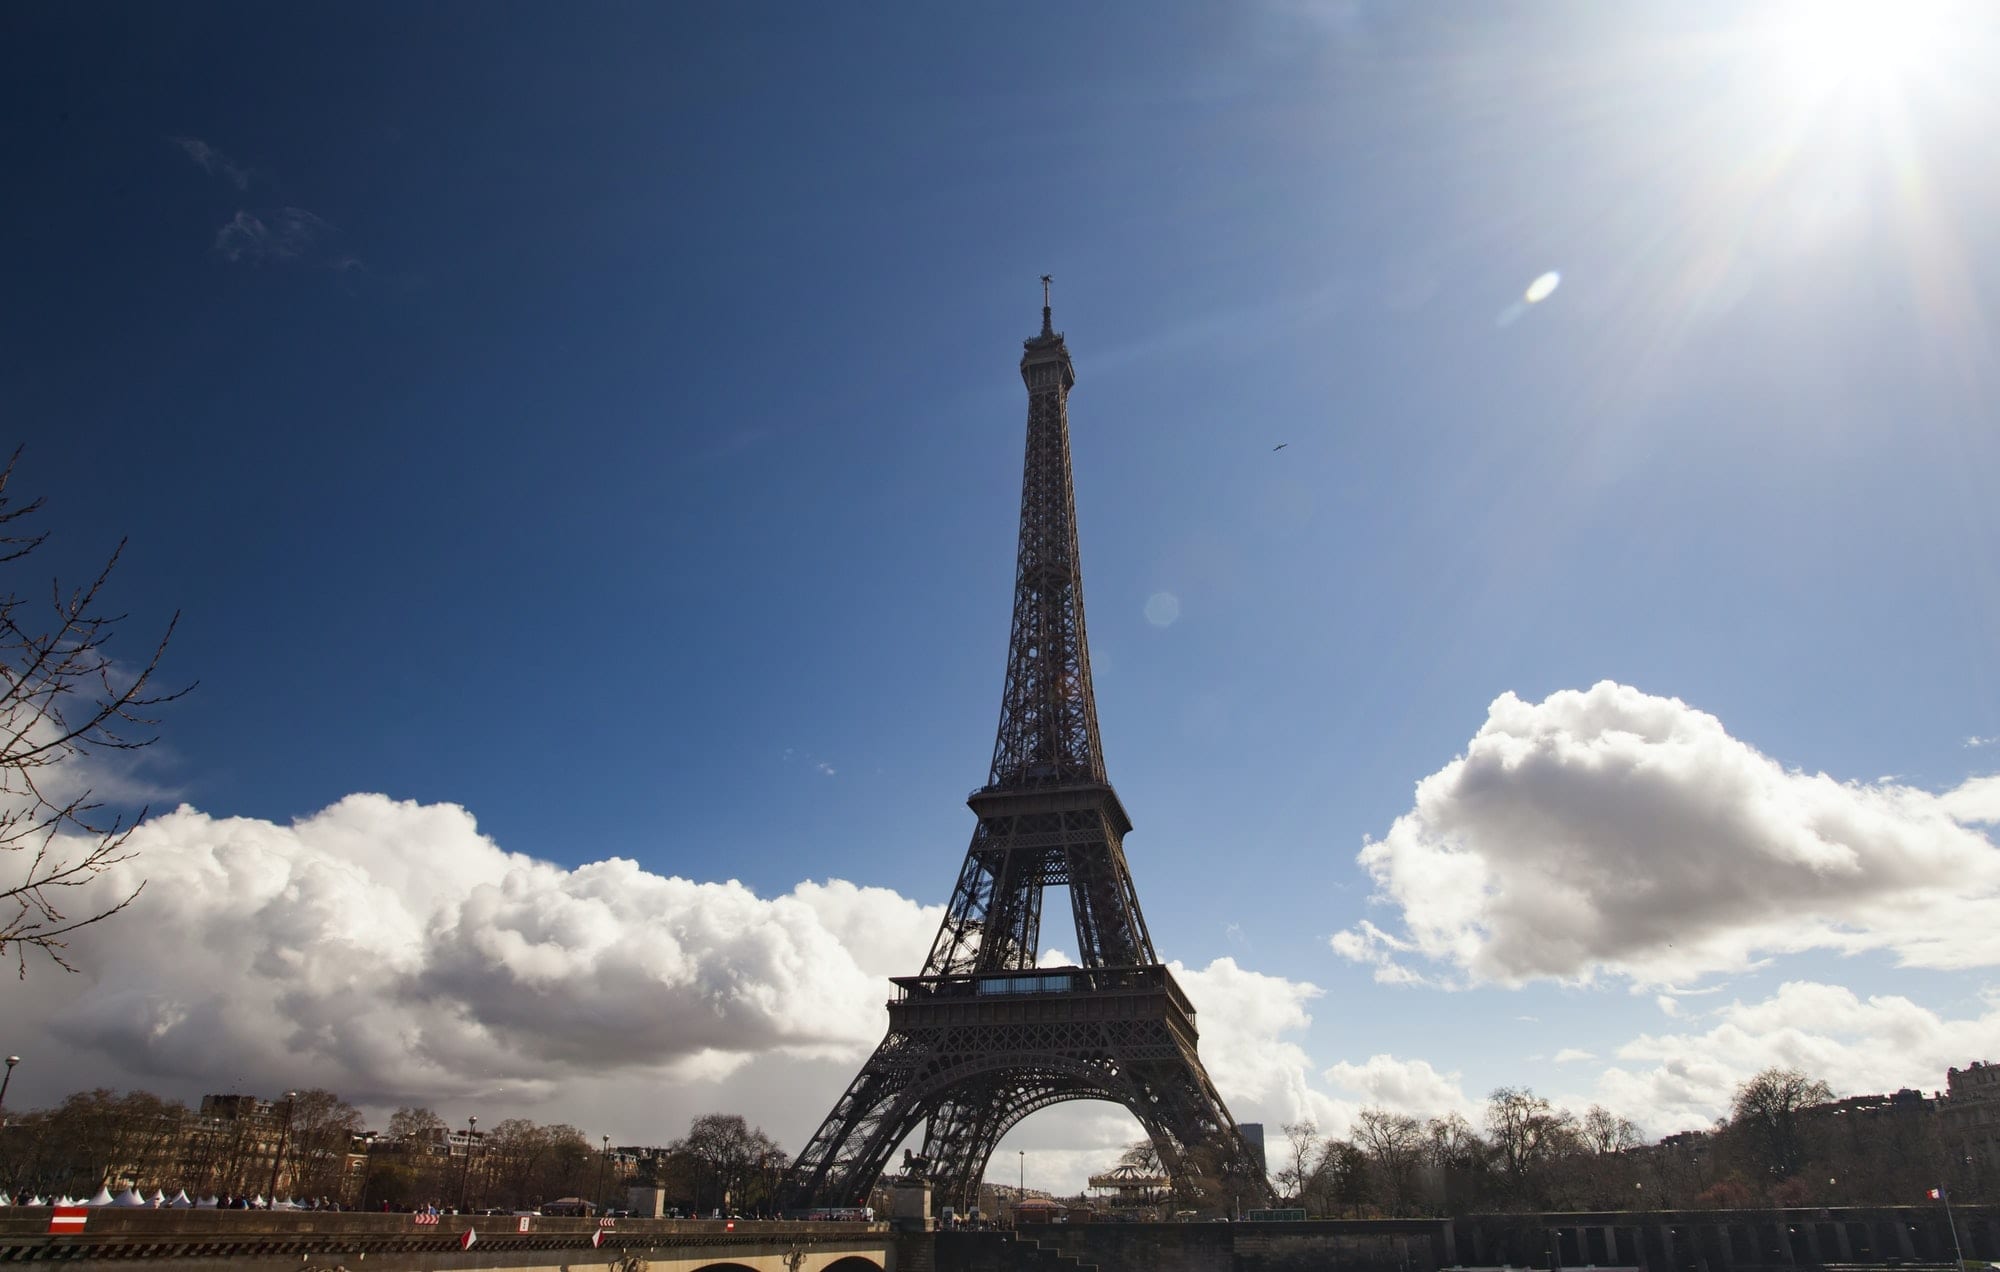 Eiffel Tower, Paris - Best destinations in Europe